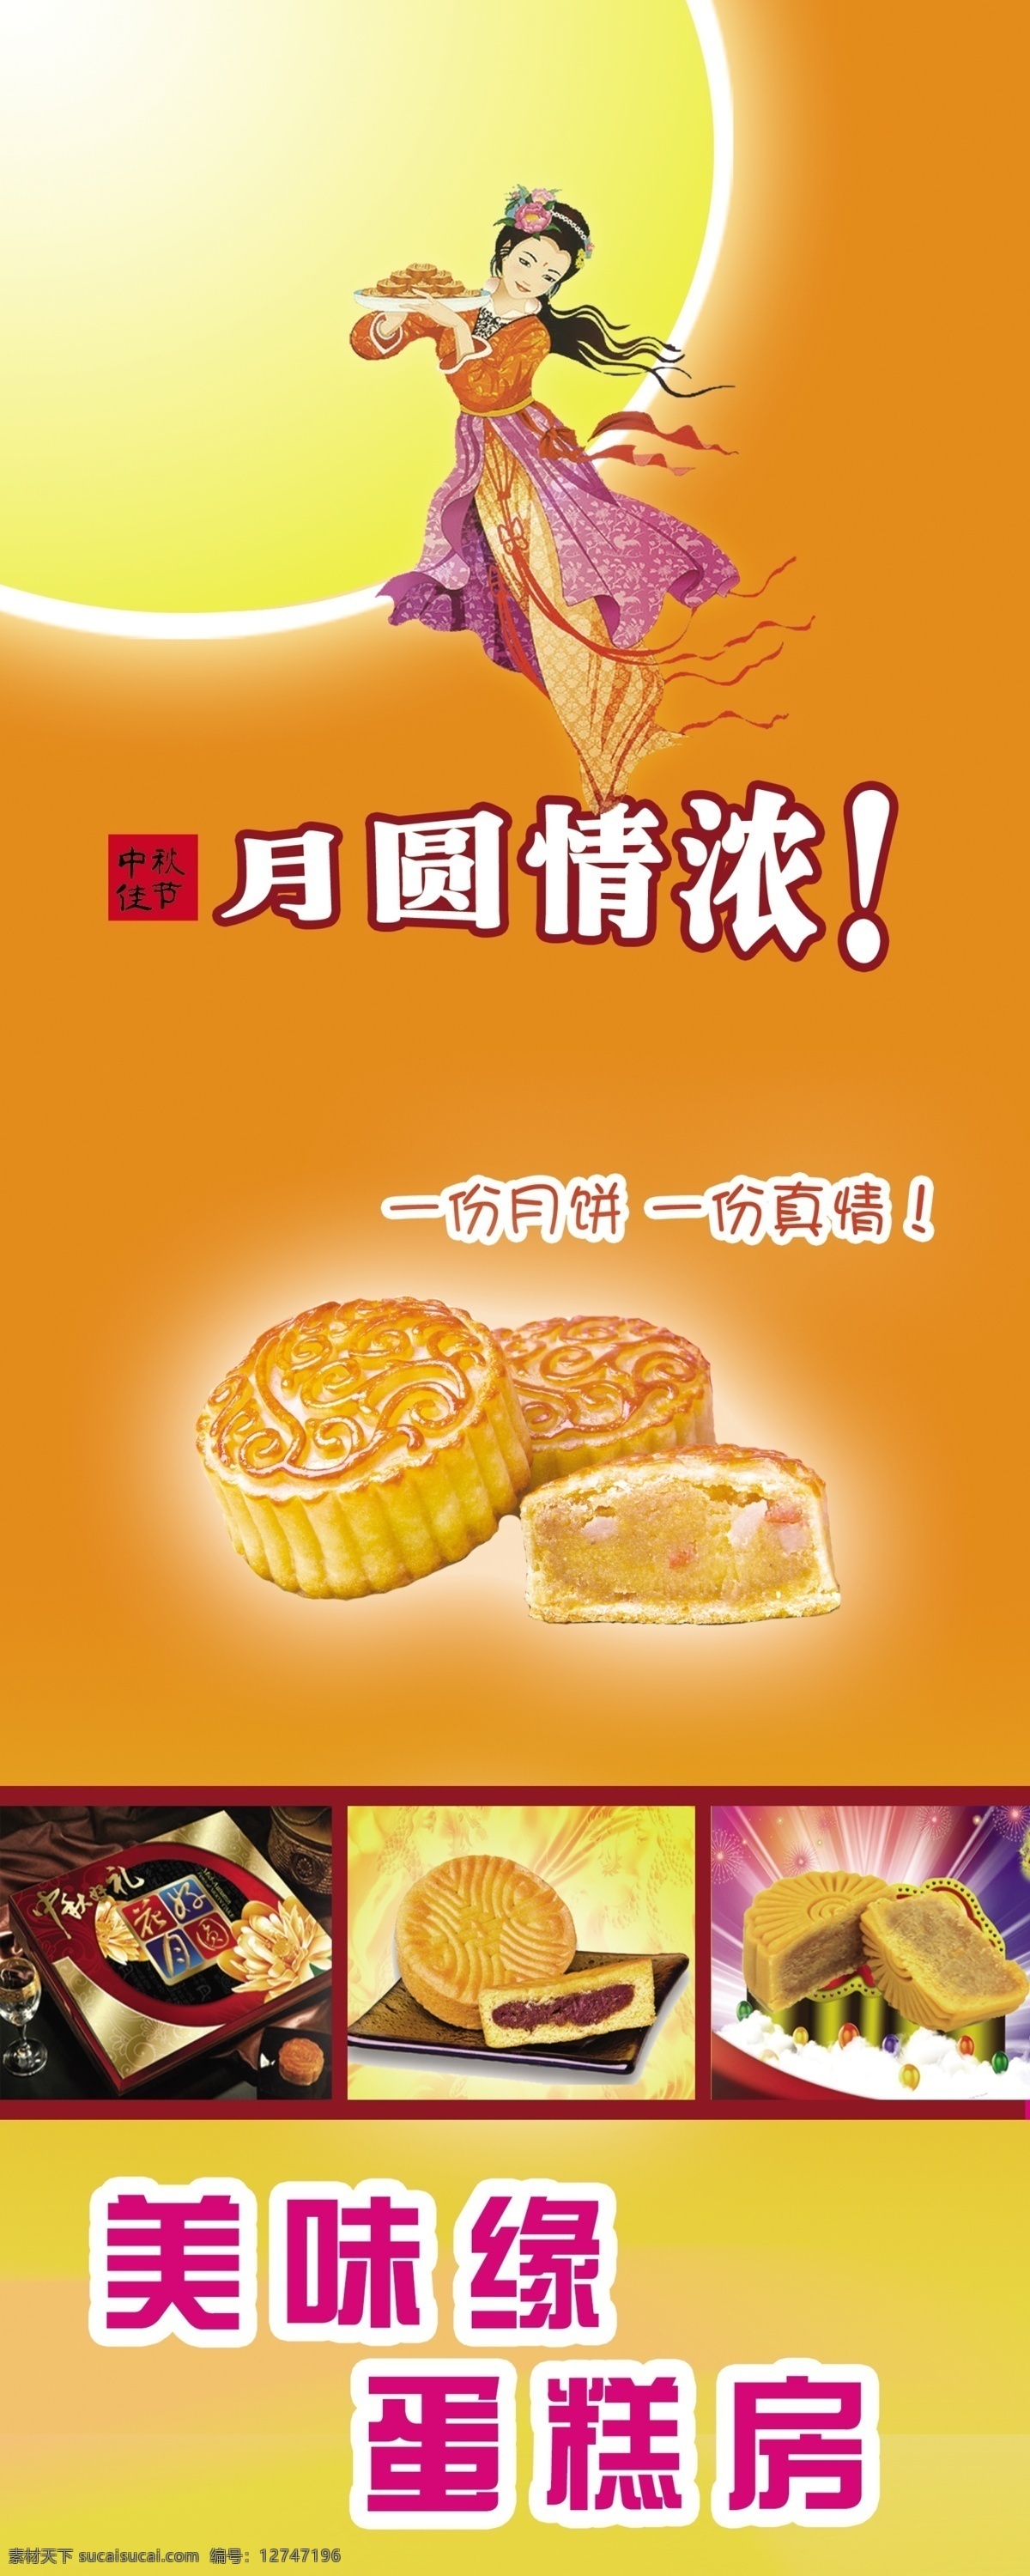 月饼广告 中秋 月饼 宣传 蛋糕店 黄色底图 展板模板 广告设计模板 源文件